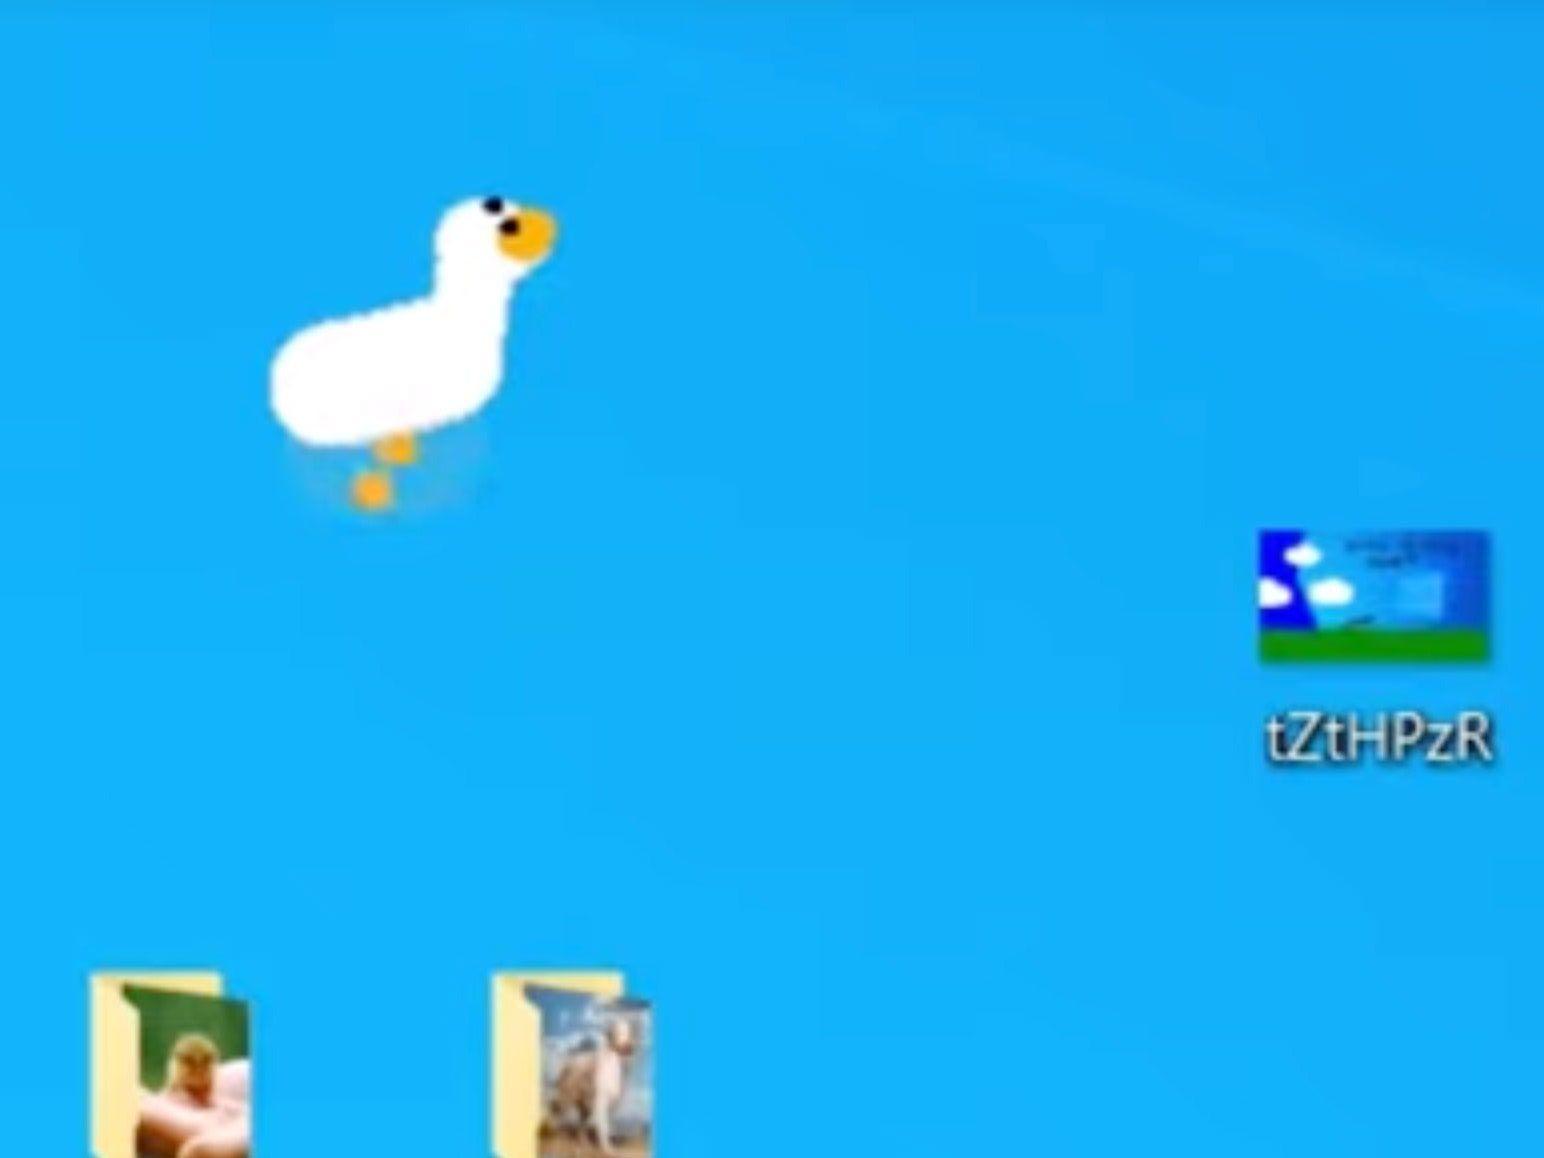 untitled goose game desktop